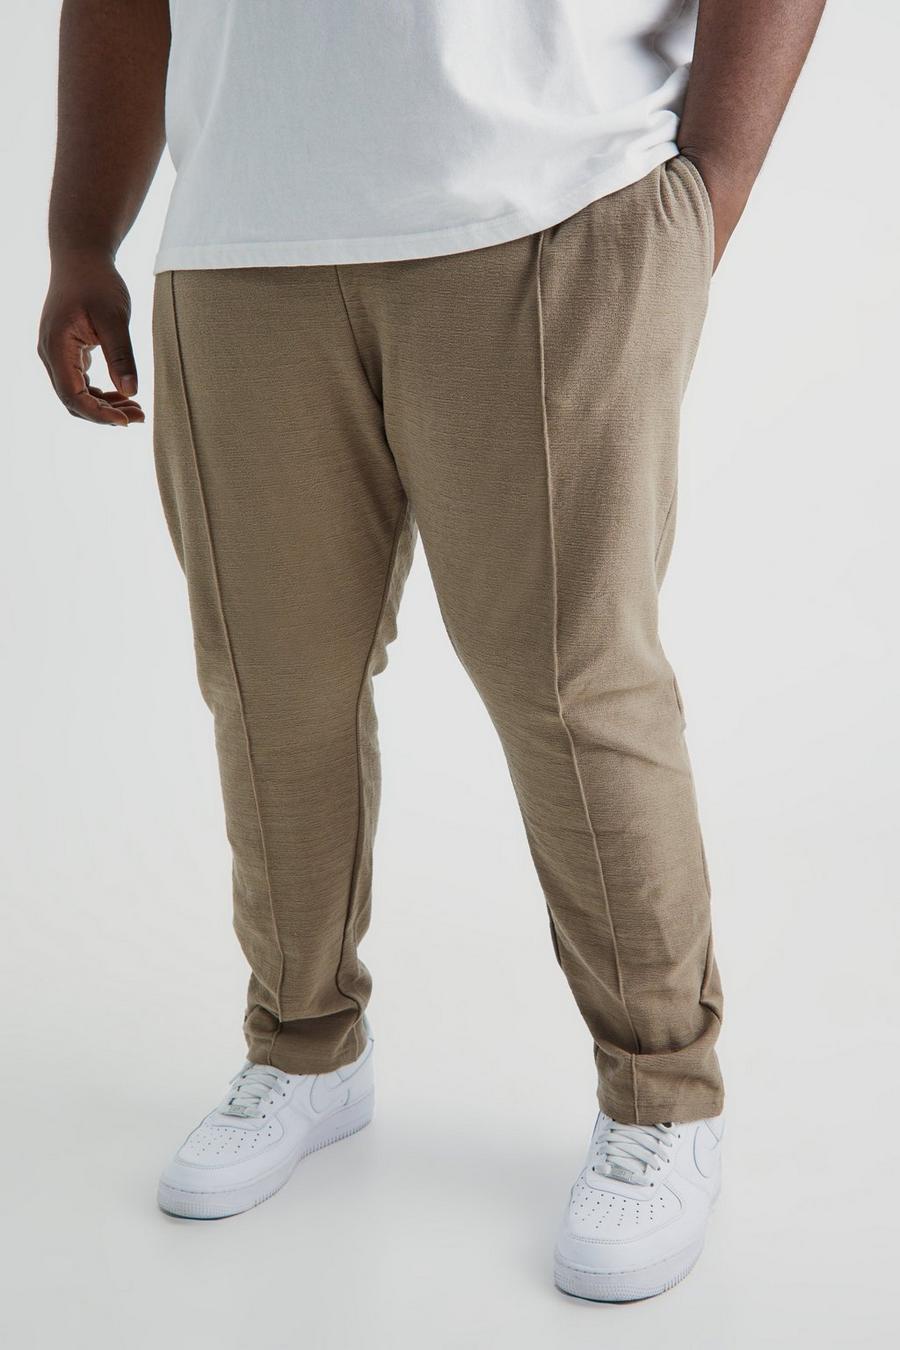 Pantaloni tuta Plus Size affusolati in tessuto fiammato in tessuto Interlock, Taupe